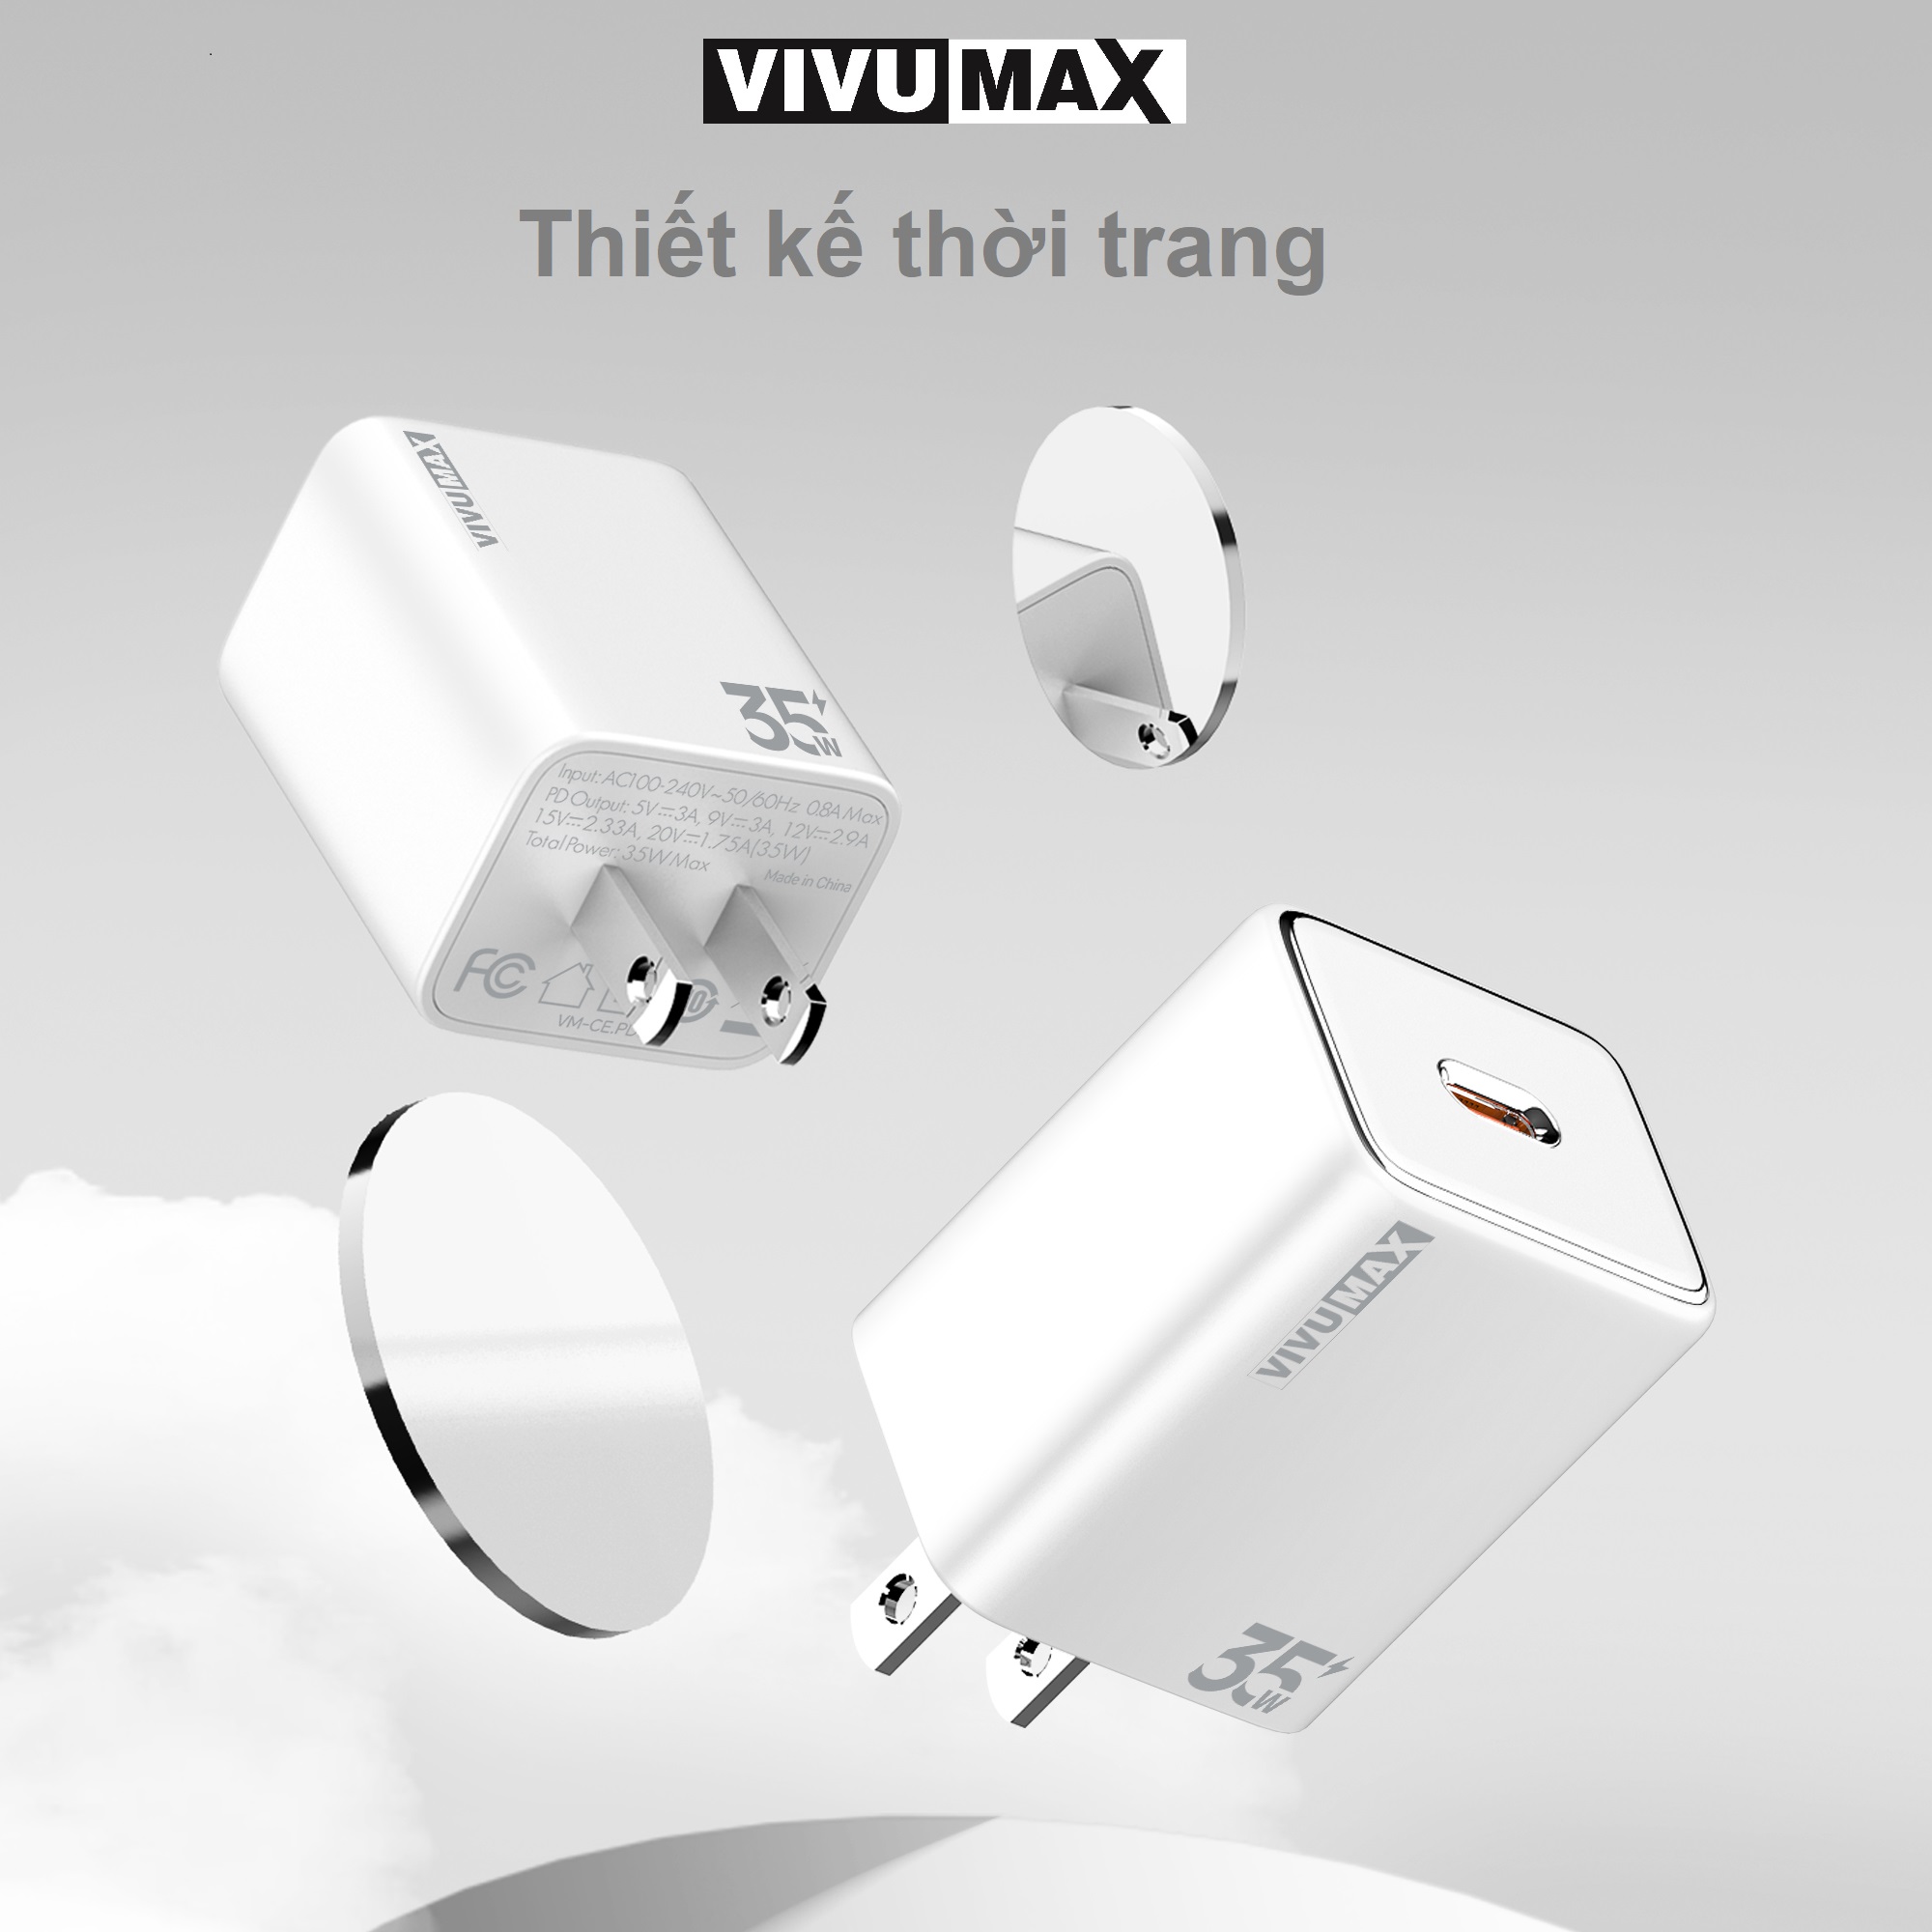 Củ sạc nhanh 1 cổng PD 35W Vivumax PD35 màu trắng - Hàng Chính Hãng, Bảo Hành Chính Hãng